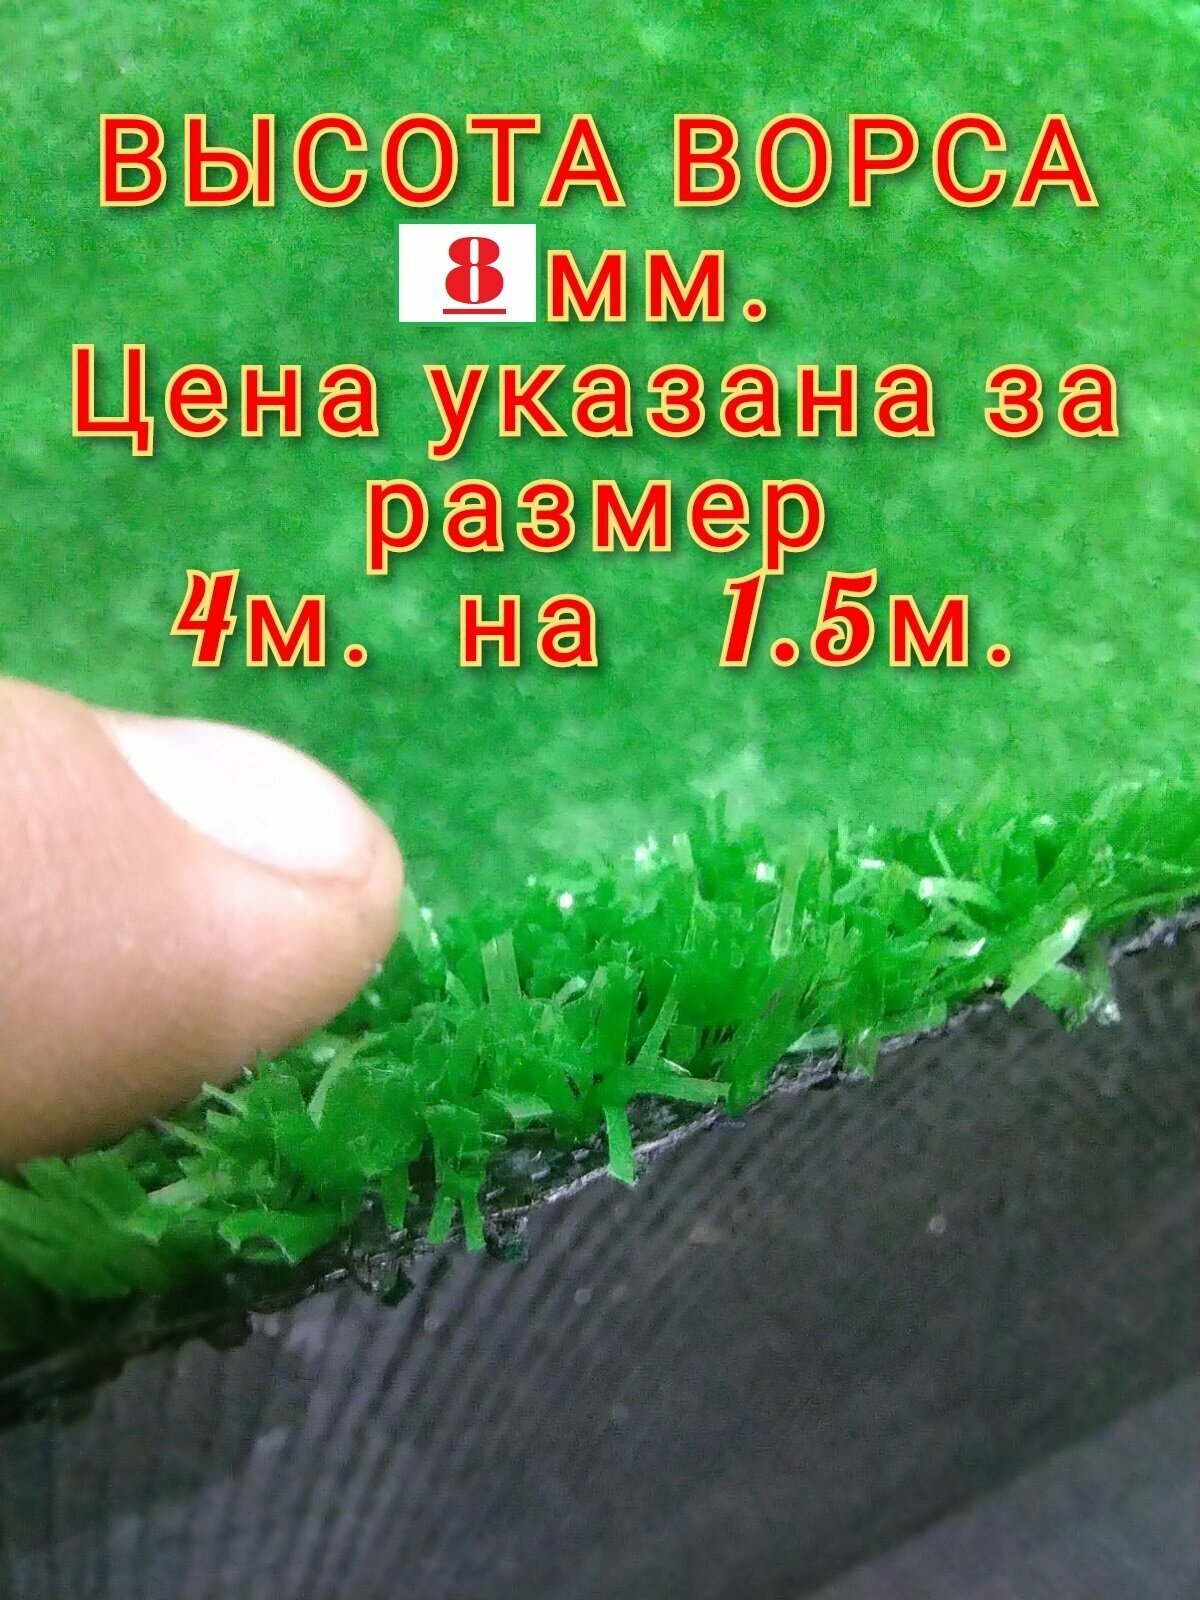 Искусственный газон 4 на 1.5 (высота ворса 8мм) общая толщина 10мм. Искусственная трава